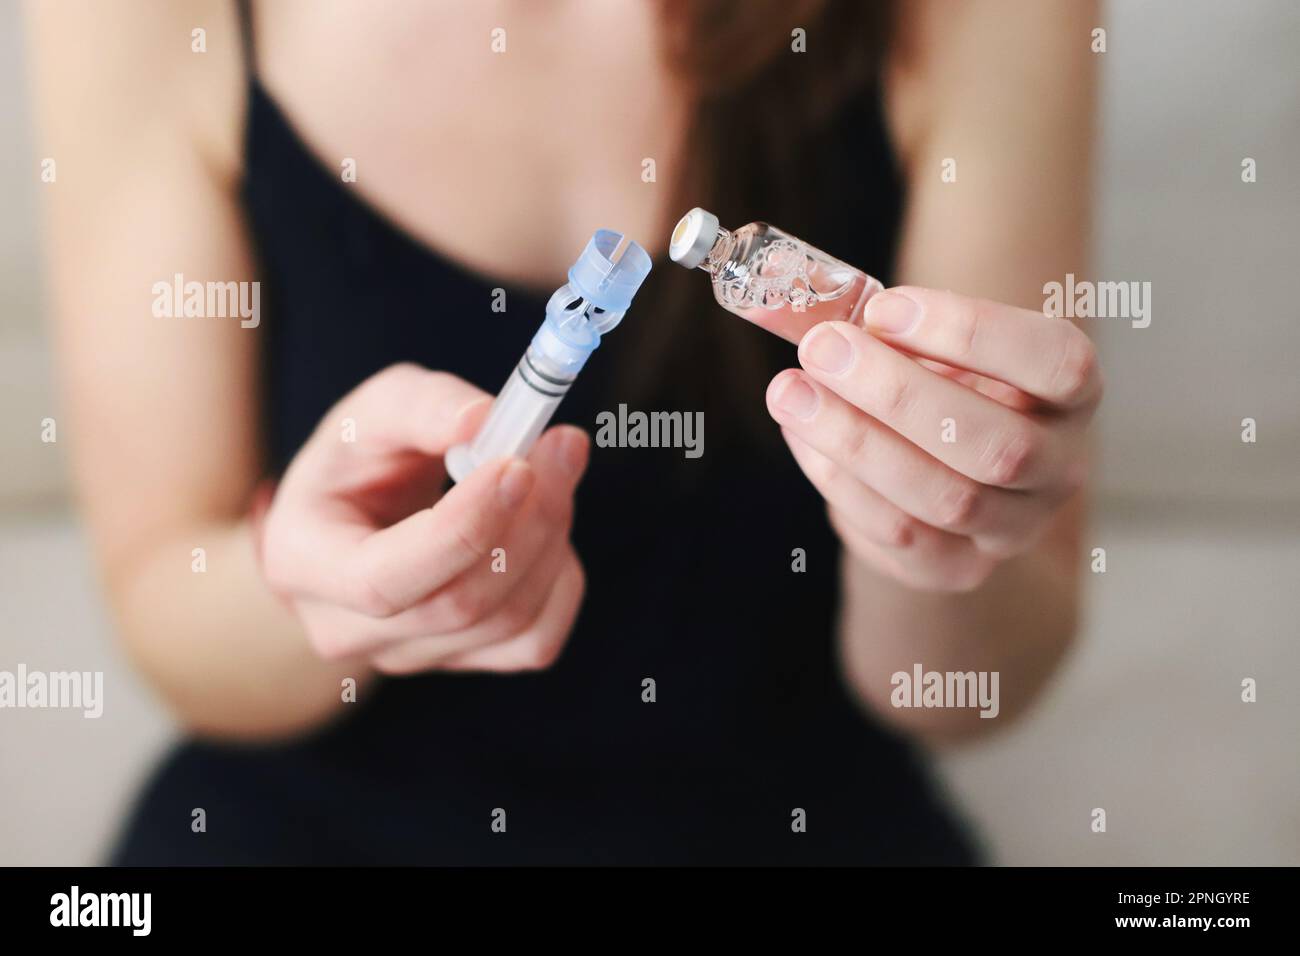 Femme remplissant le réservoir de sa pompe à insuline avec de l'insuline Banque D'Images